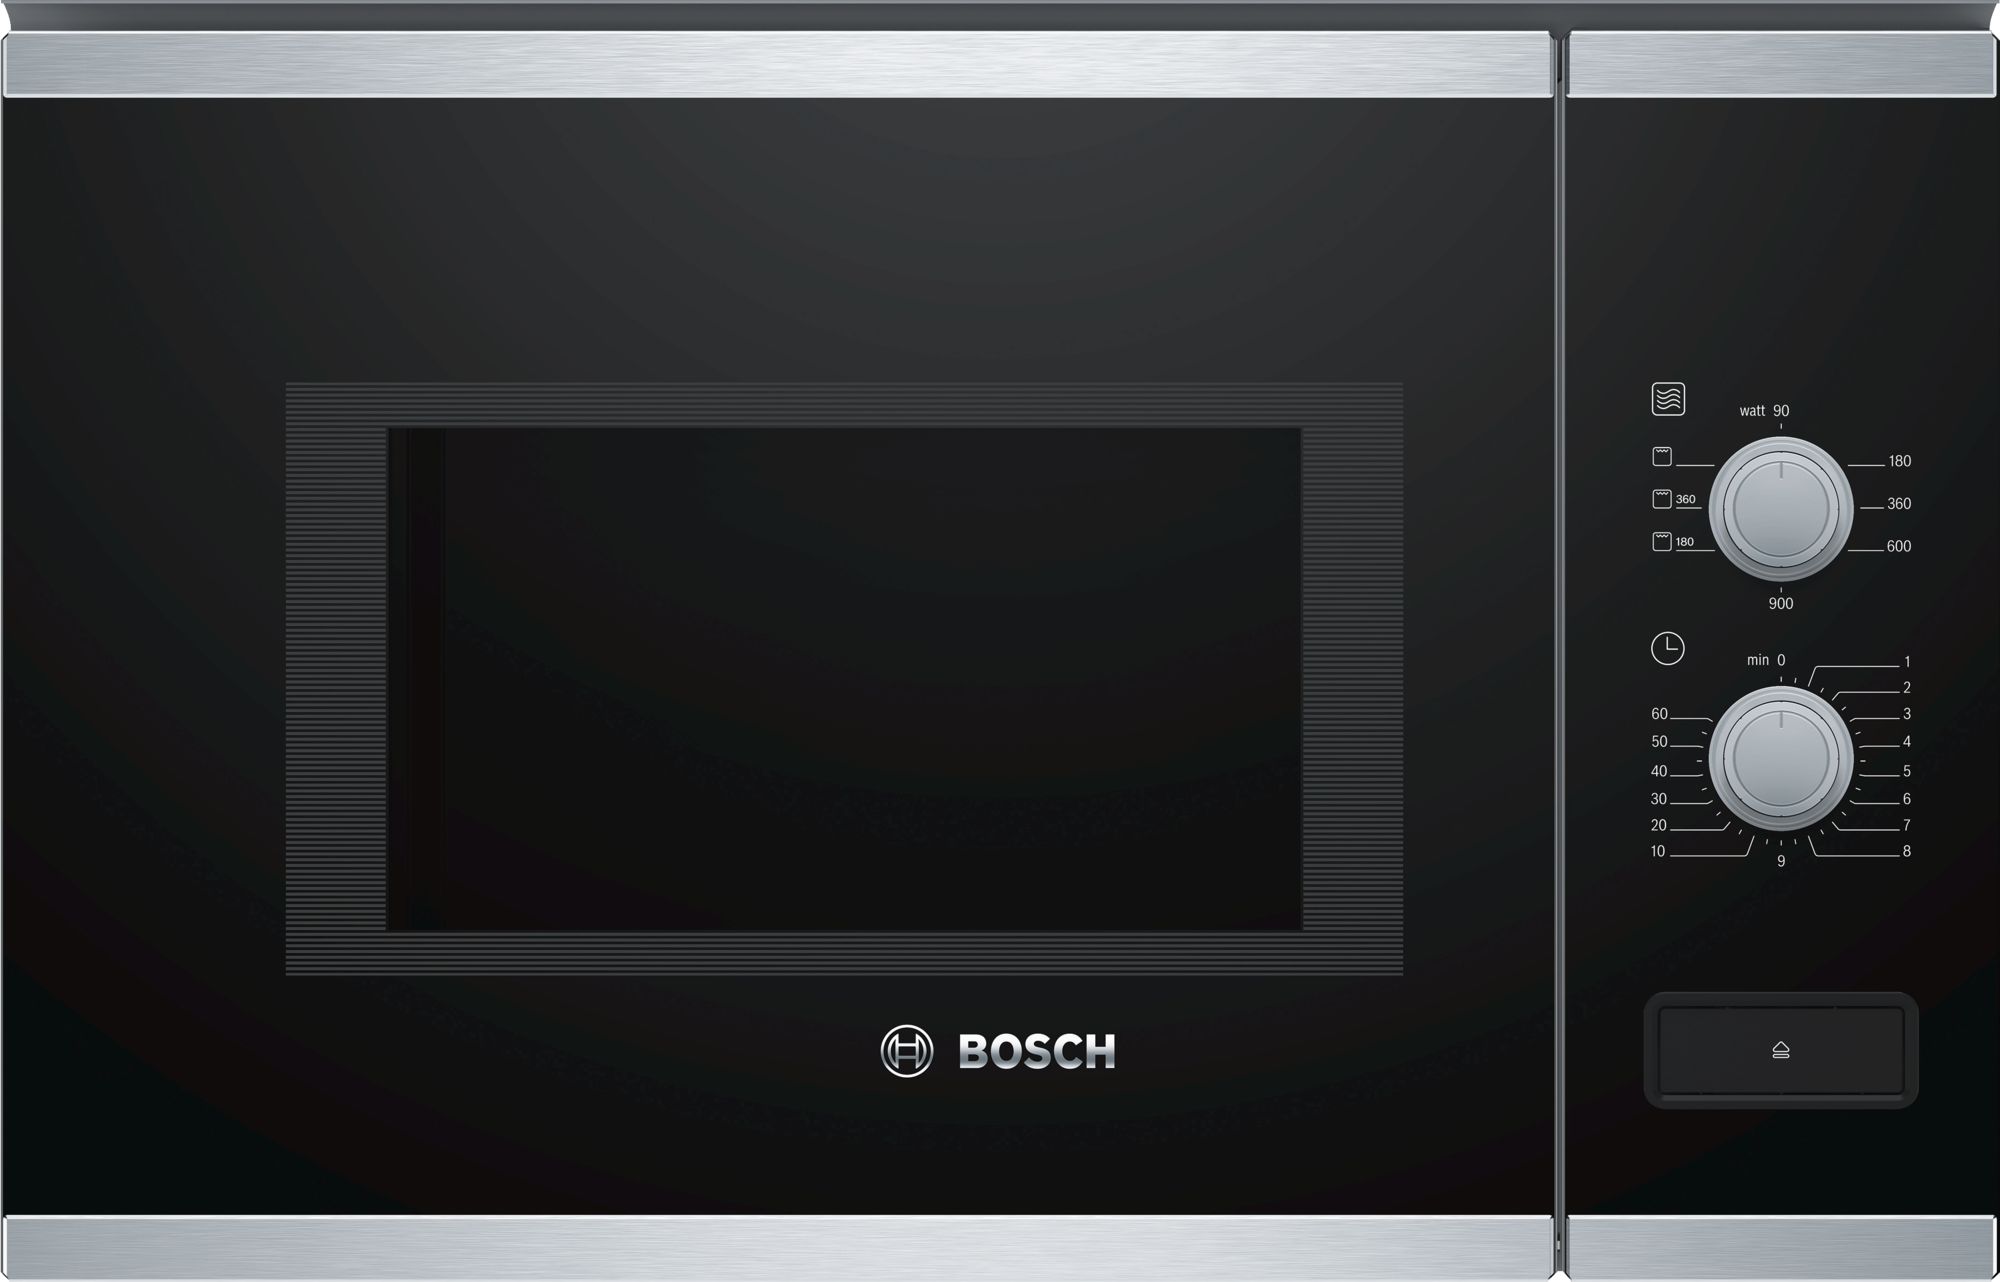 Встроенная микроволновая печь bosch черная. Bosch bfl520mв0 / bfl520ms0. Встраиваемая микроволновая печь Bosch bel7321b1. Bosch 653 микроволновка. Встраиваемая микроволновка 20 л.